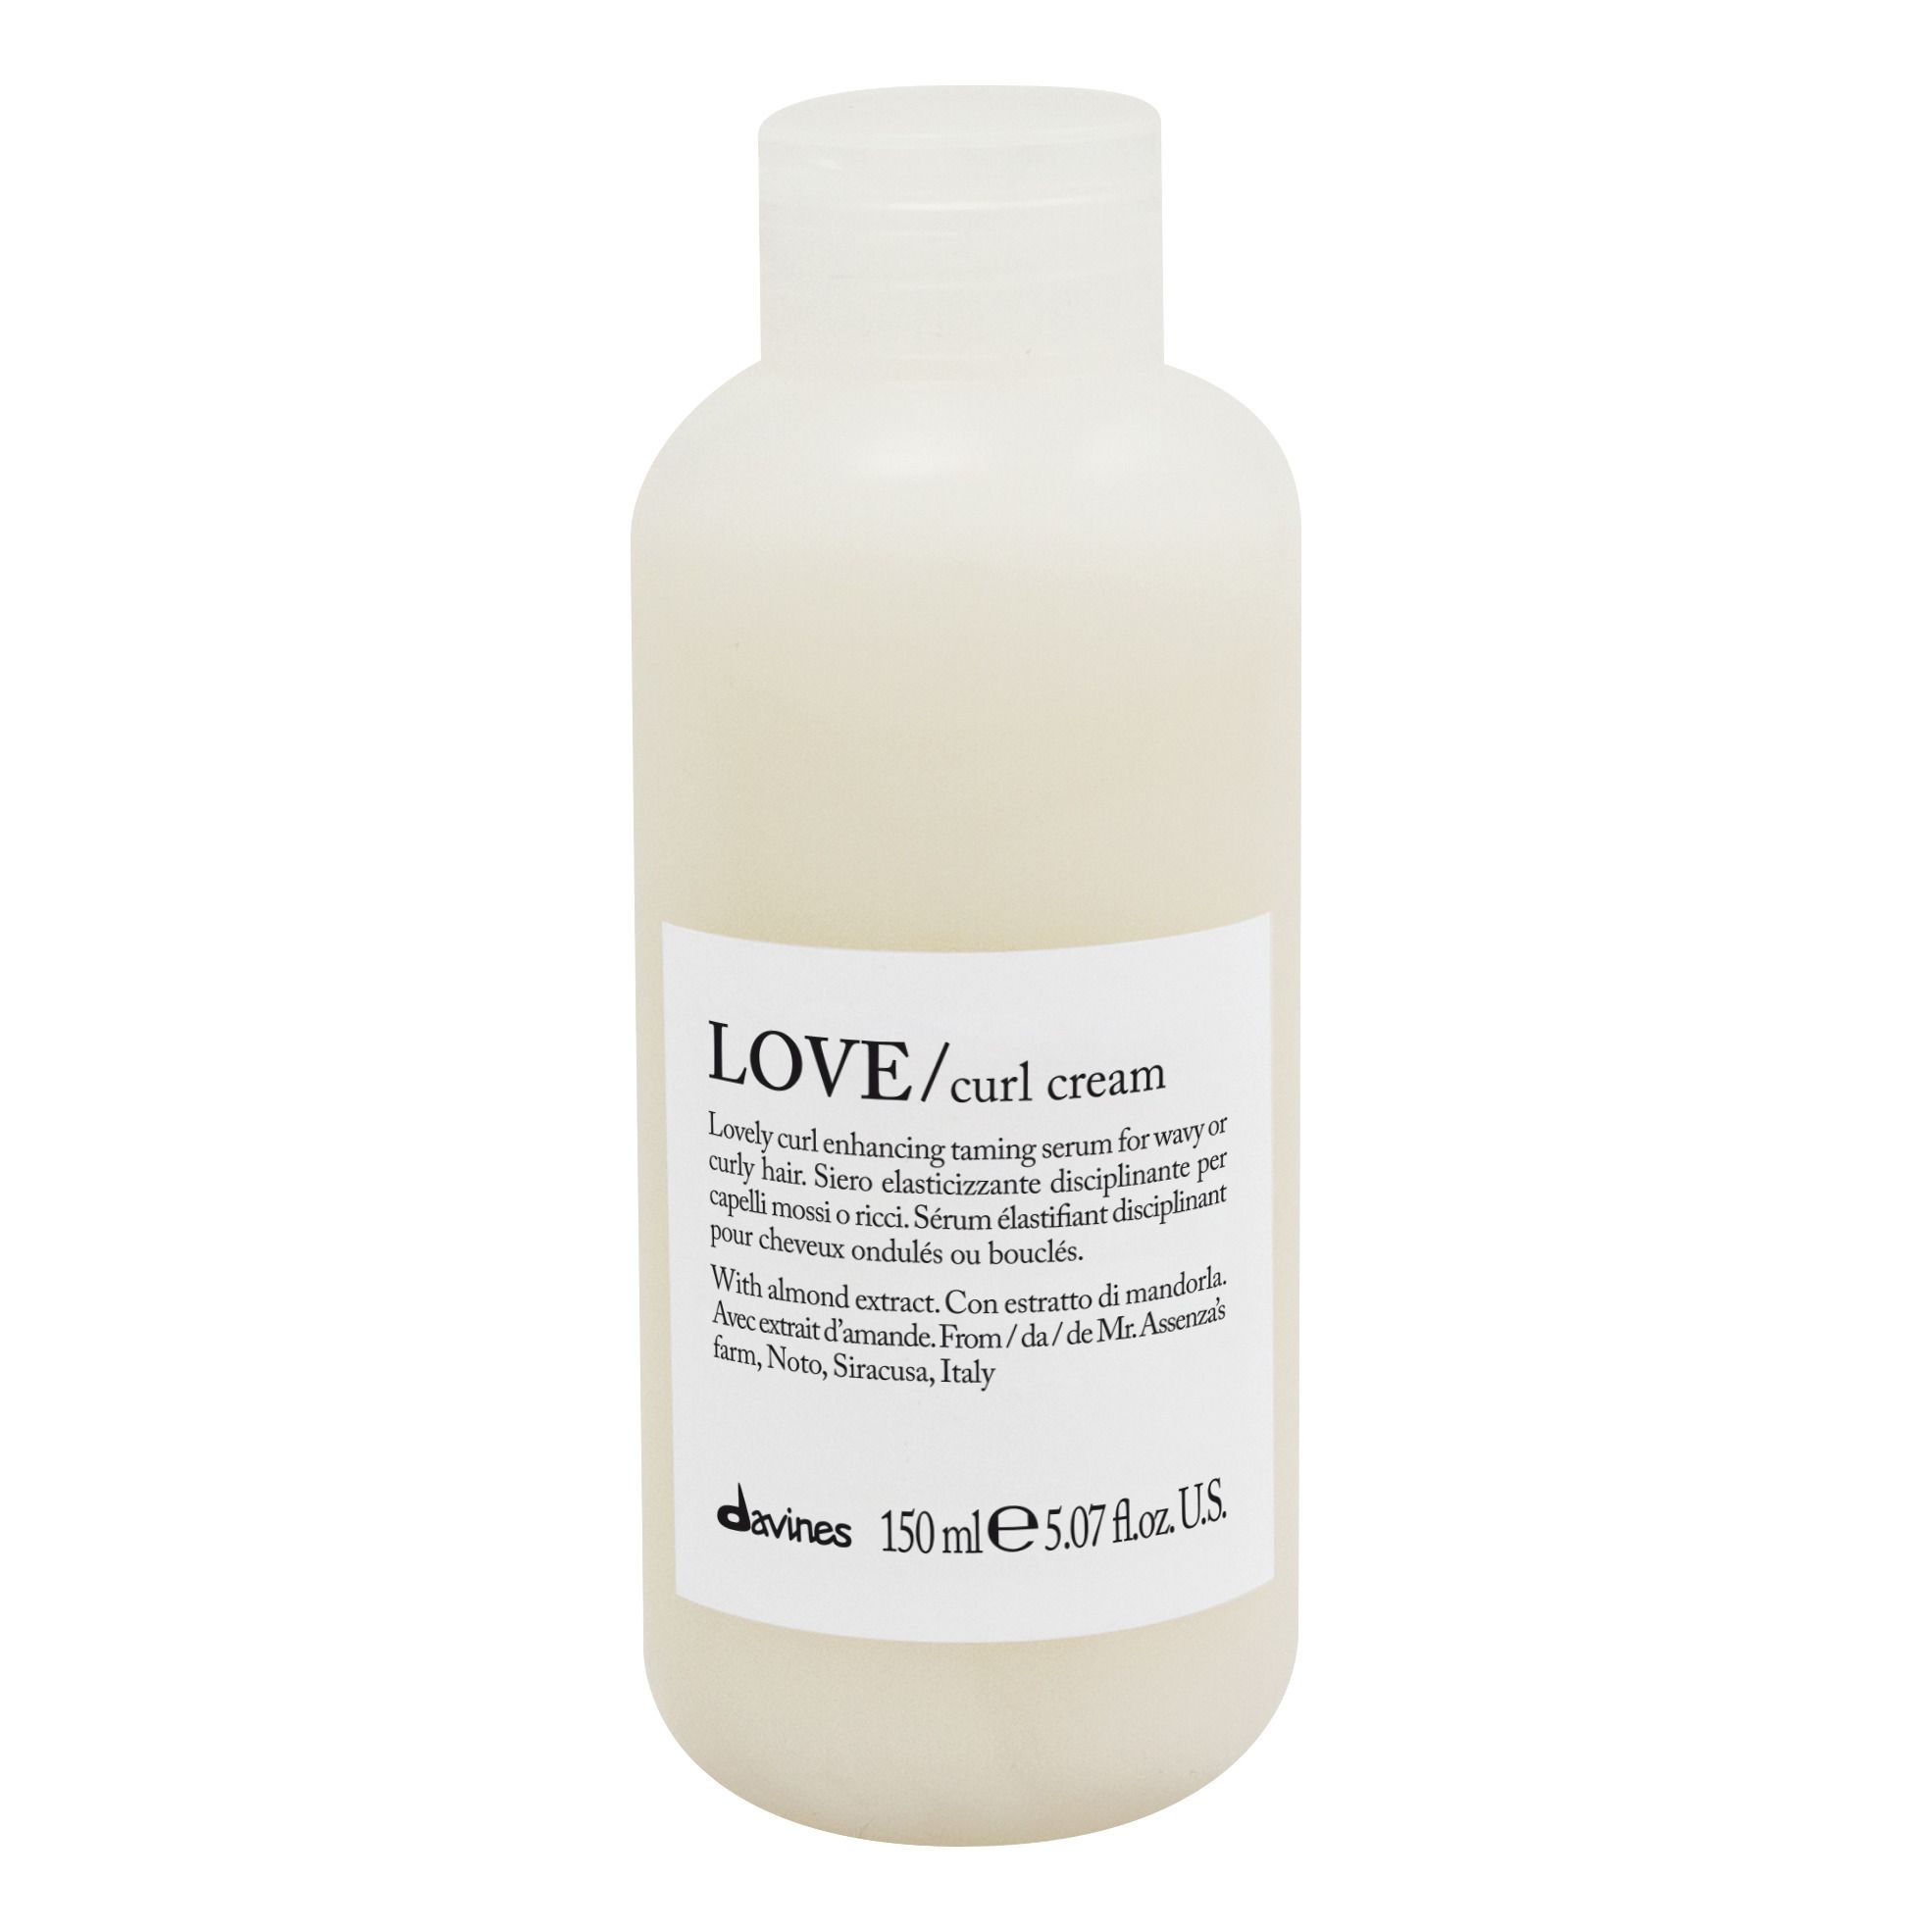 Davines - Sérum disciplinant pour cheveux ondulés ou bouclés Love -150ml - Blanc